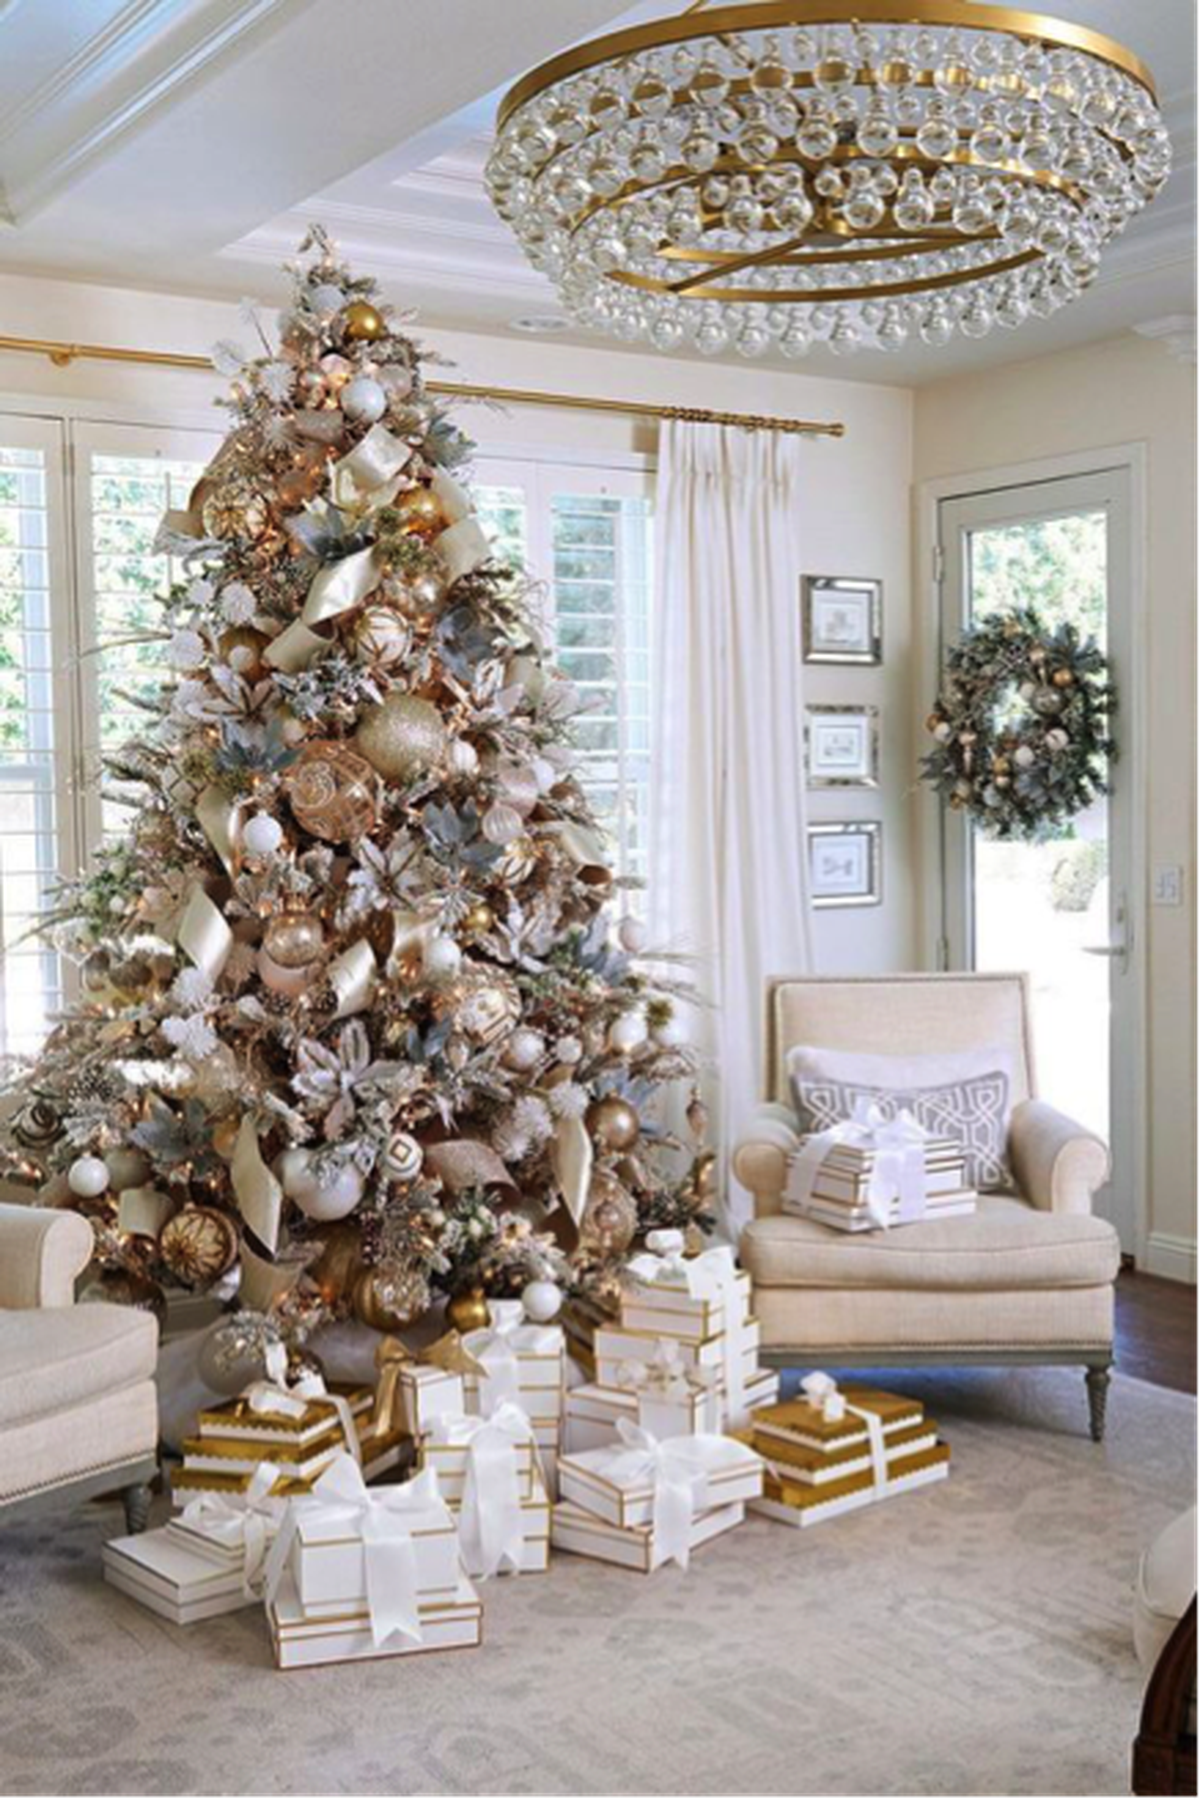 Árvore de Natal Branca? Veja dicas de decoração diferente | TV Vanguarda |  Rede Globo